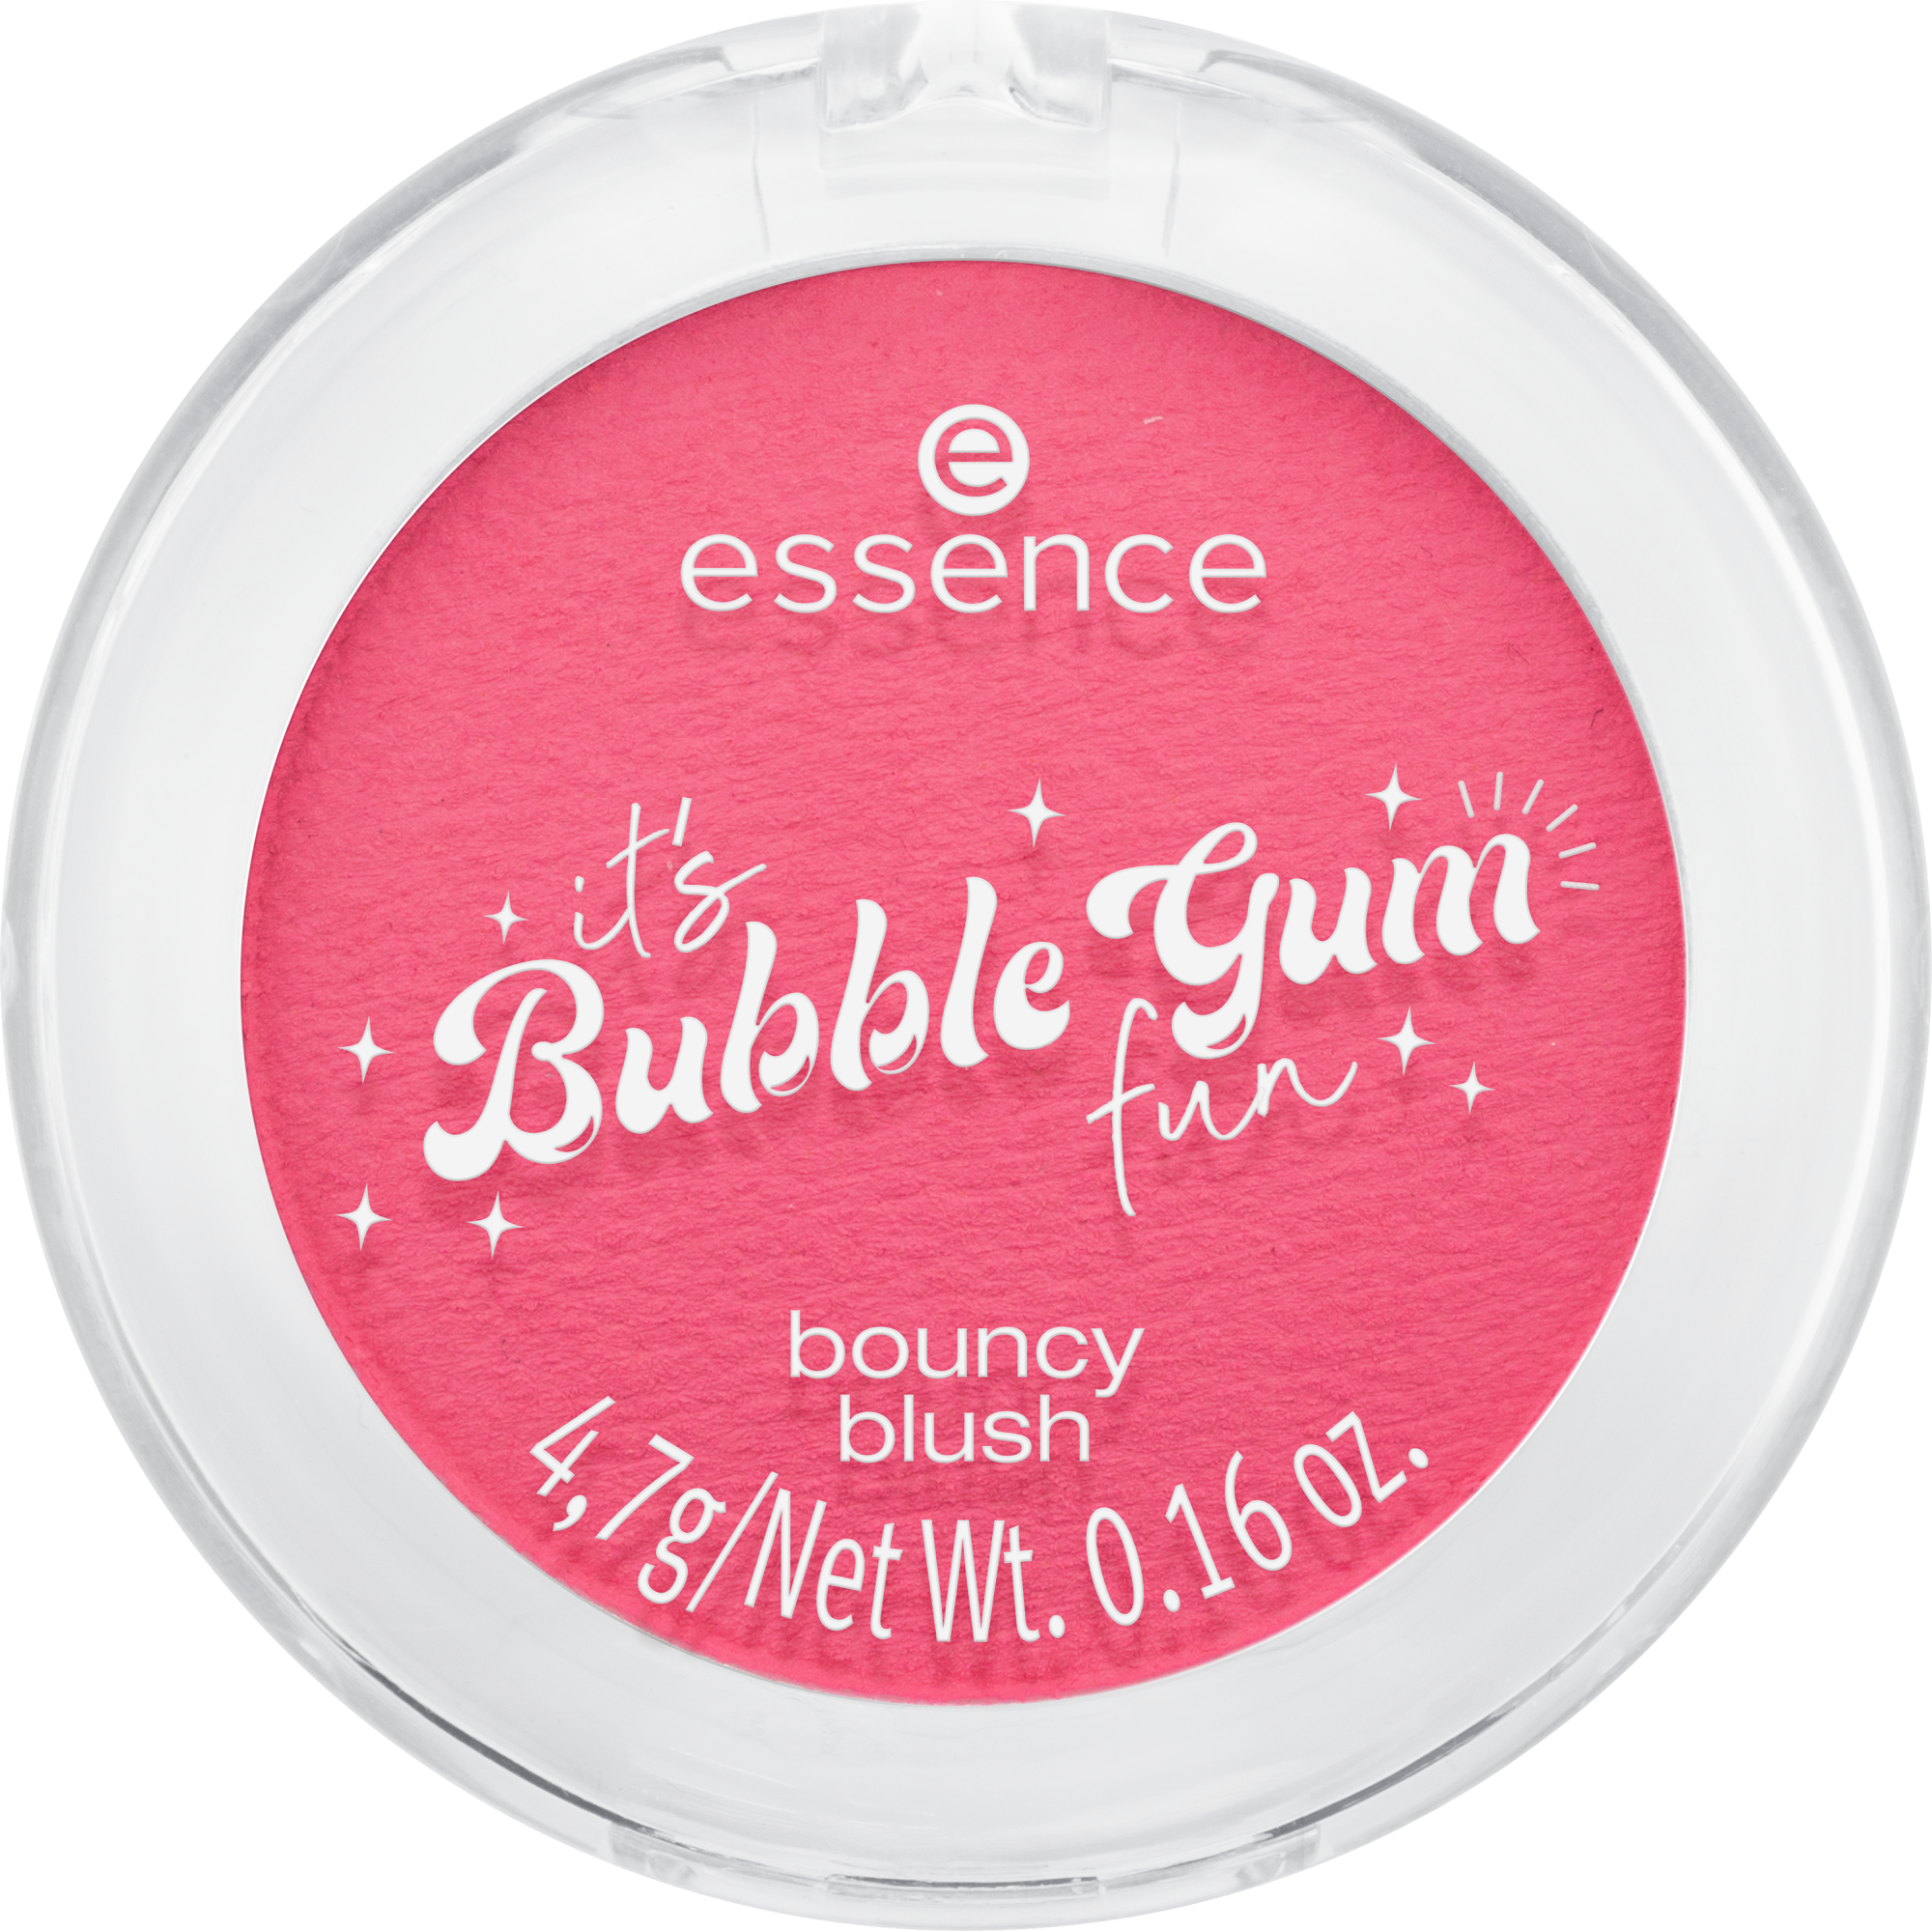 Colorete bouncy it's Bubble Gum fun